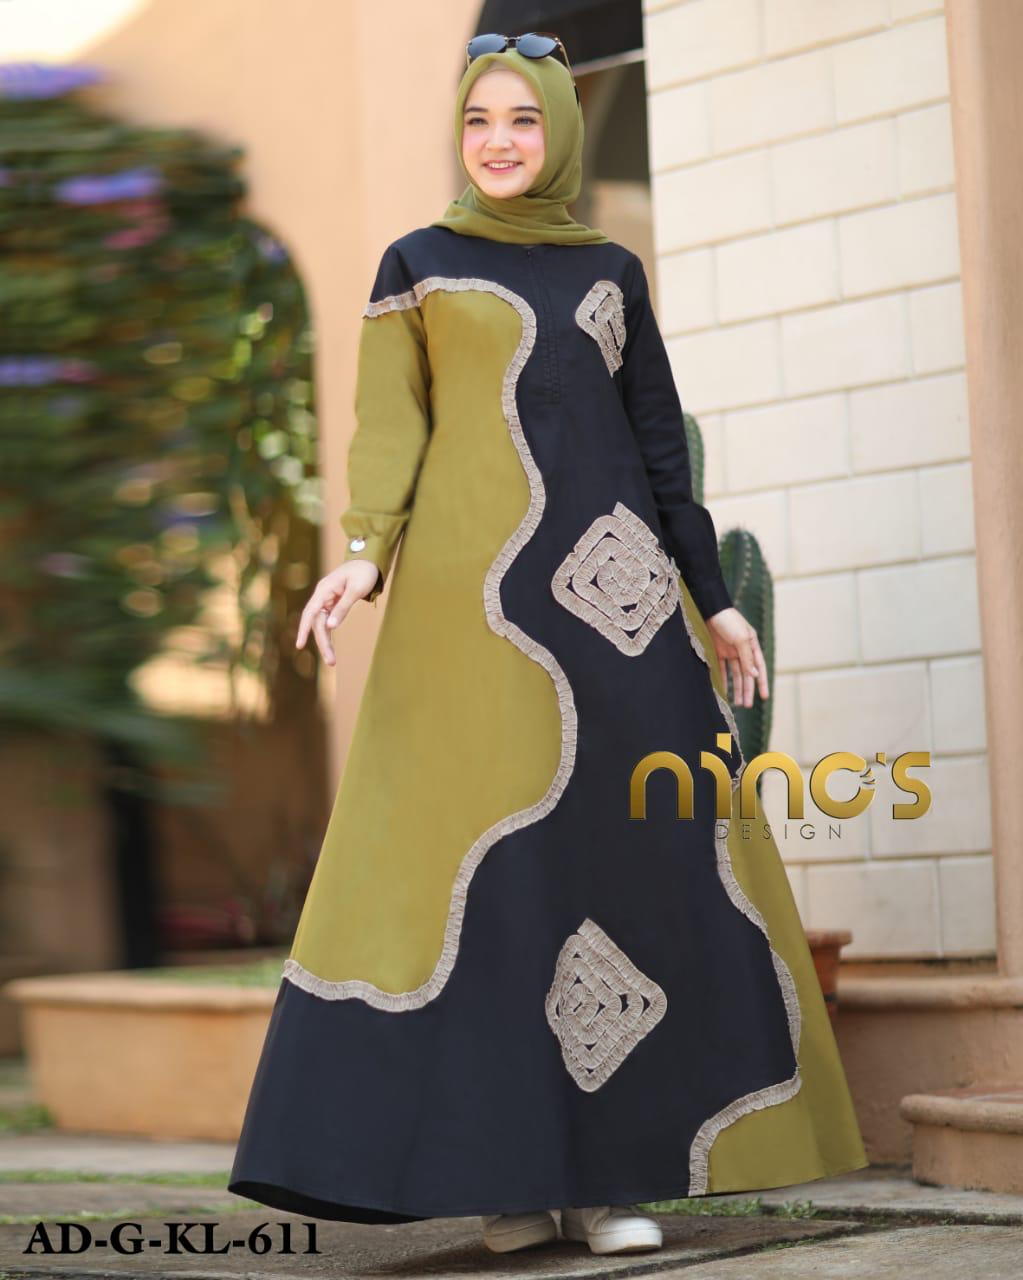 Cod Gamis Ninos Design Original Terbaru Gamis Wanita Modern Terbaru Allsize By Ninos Design Lazada Indonesia